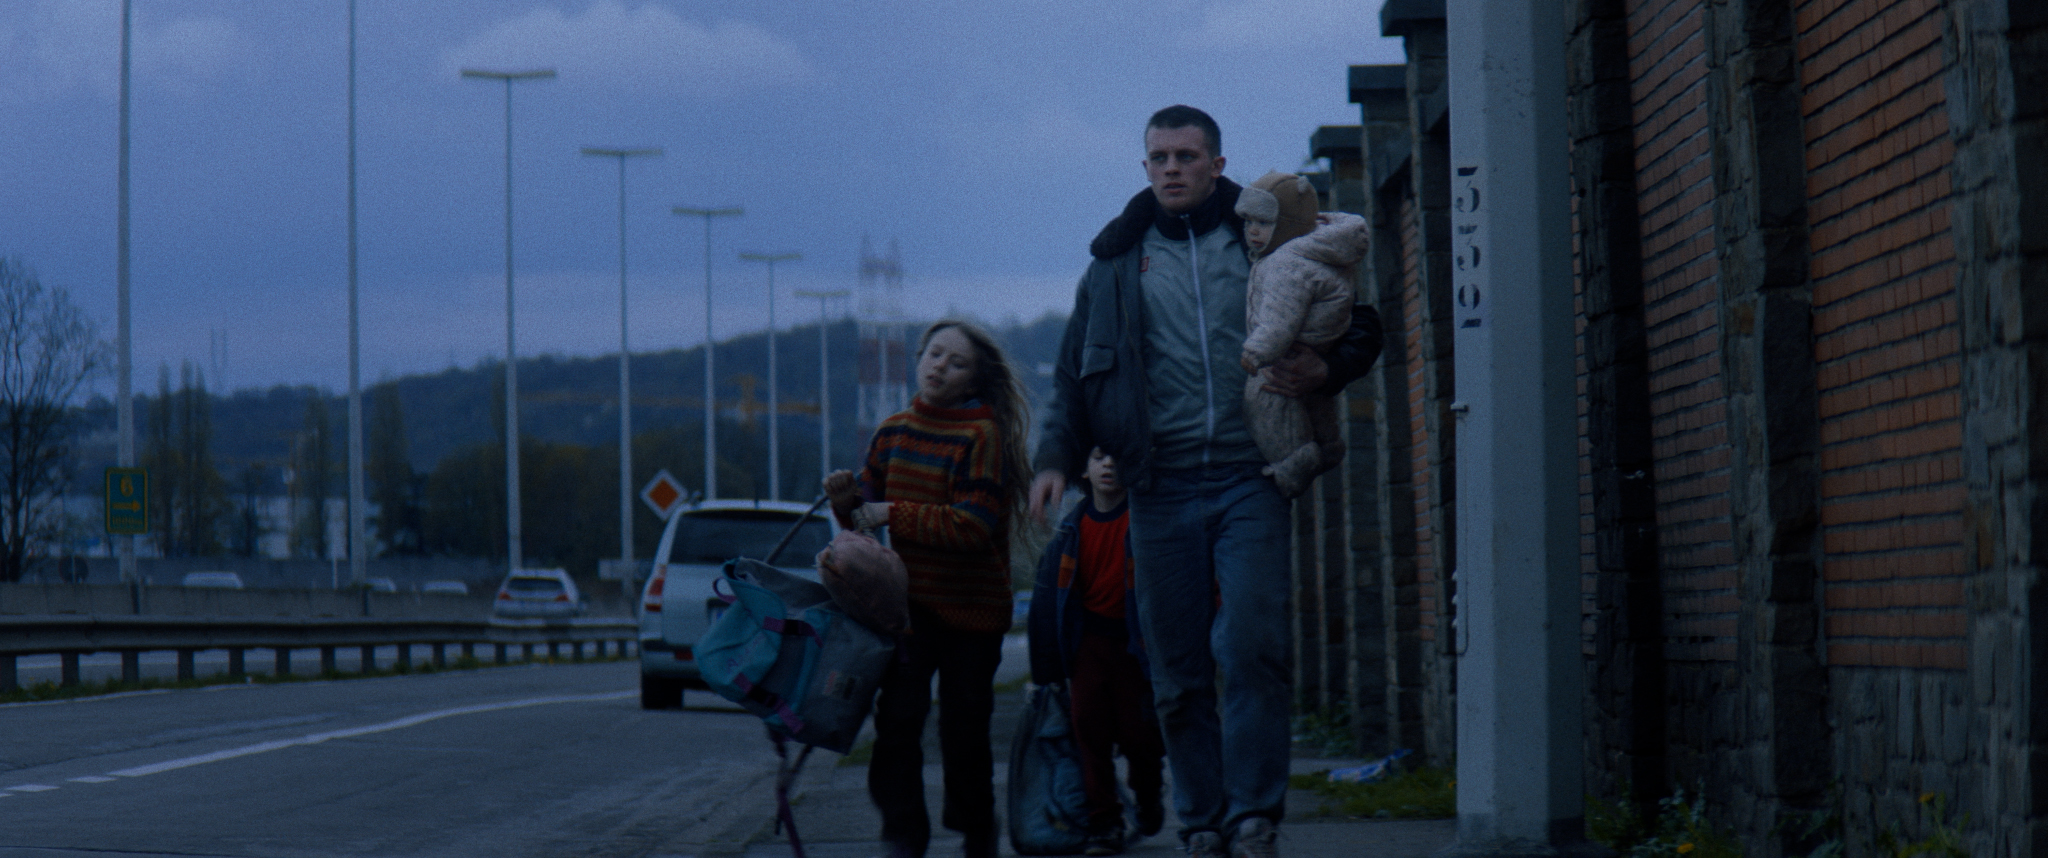 Filmstill aus "Kids Run": Ein Mann mit drei Kindern eilt in der Dämmerung am Rand einer Schnellstraße entlang.